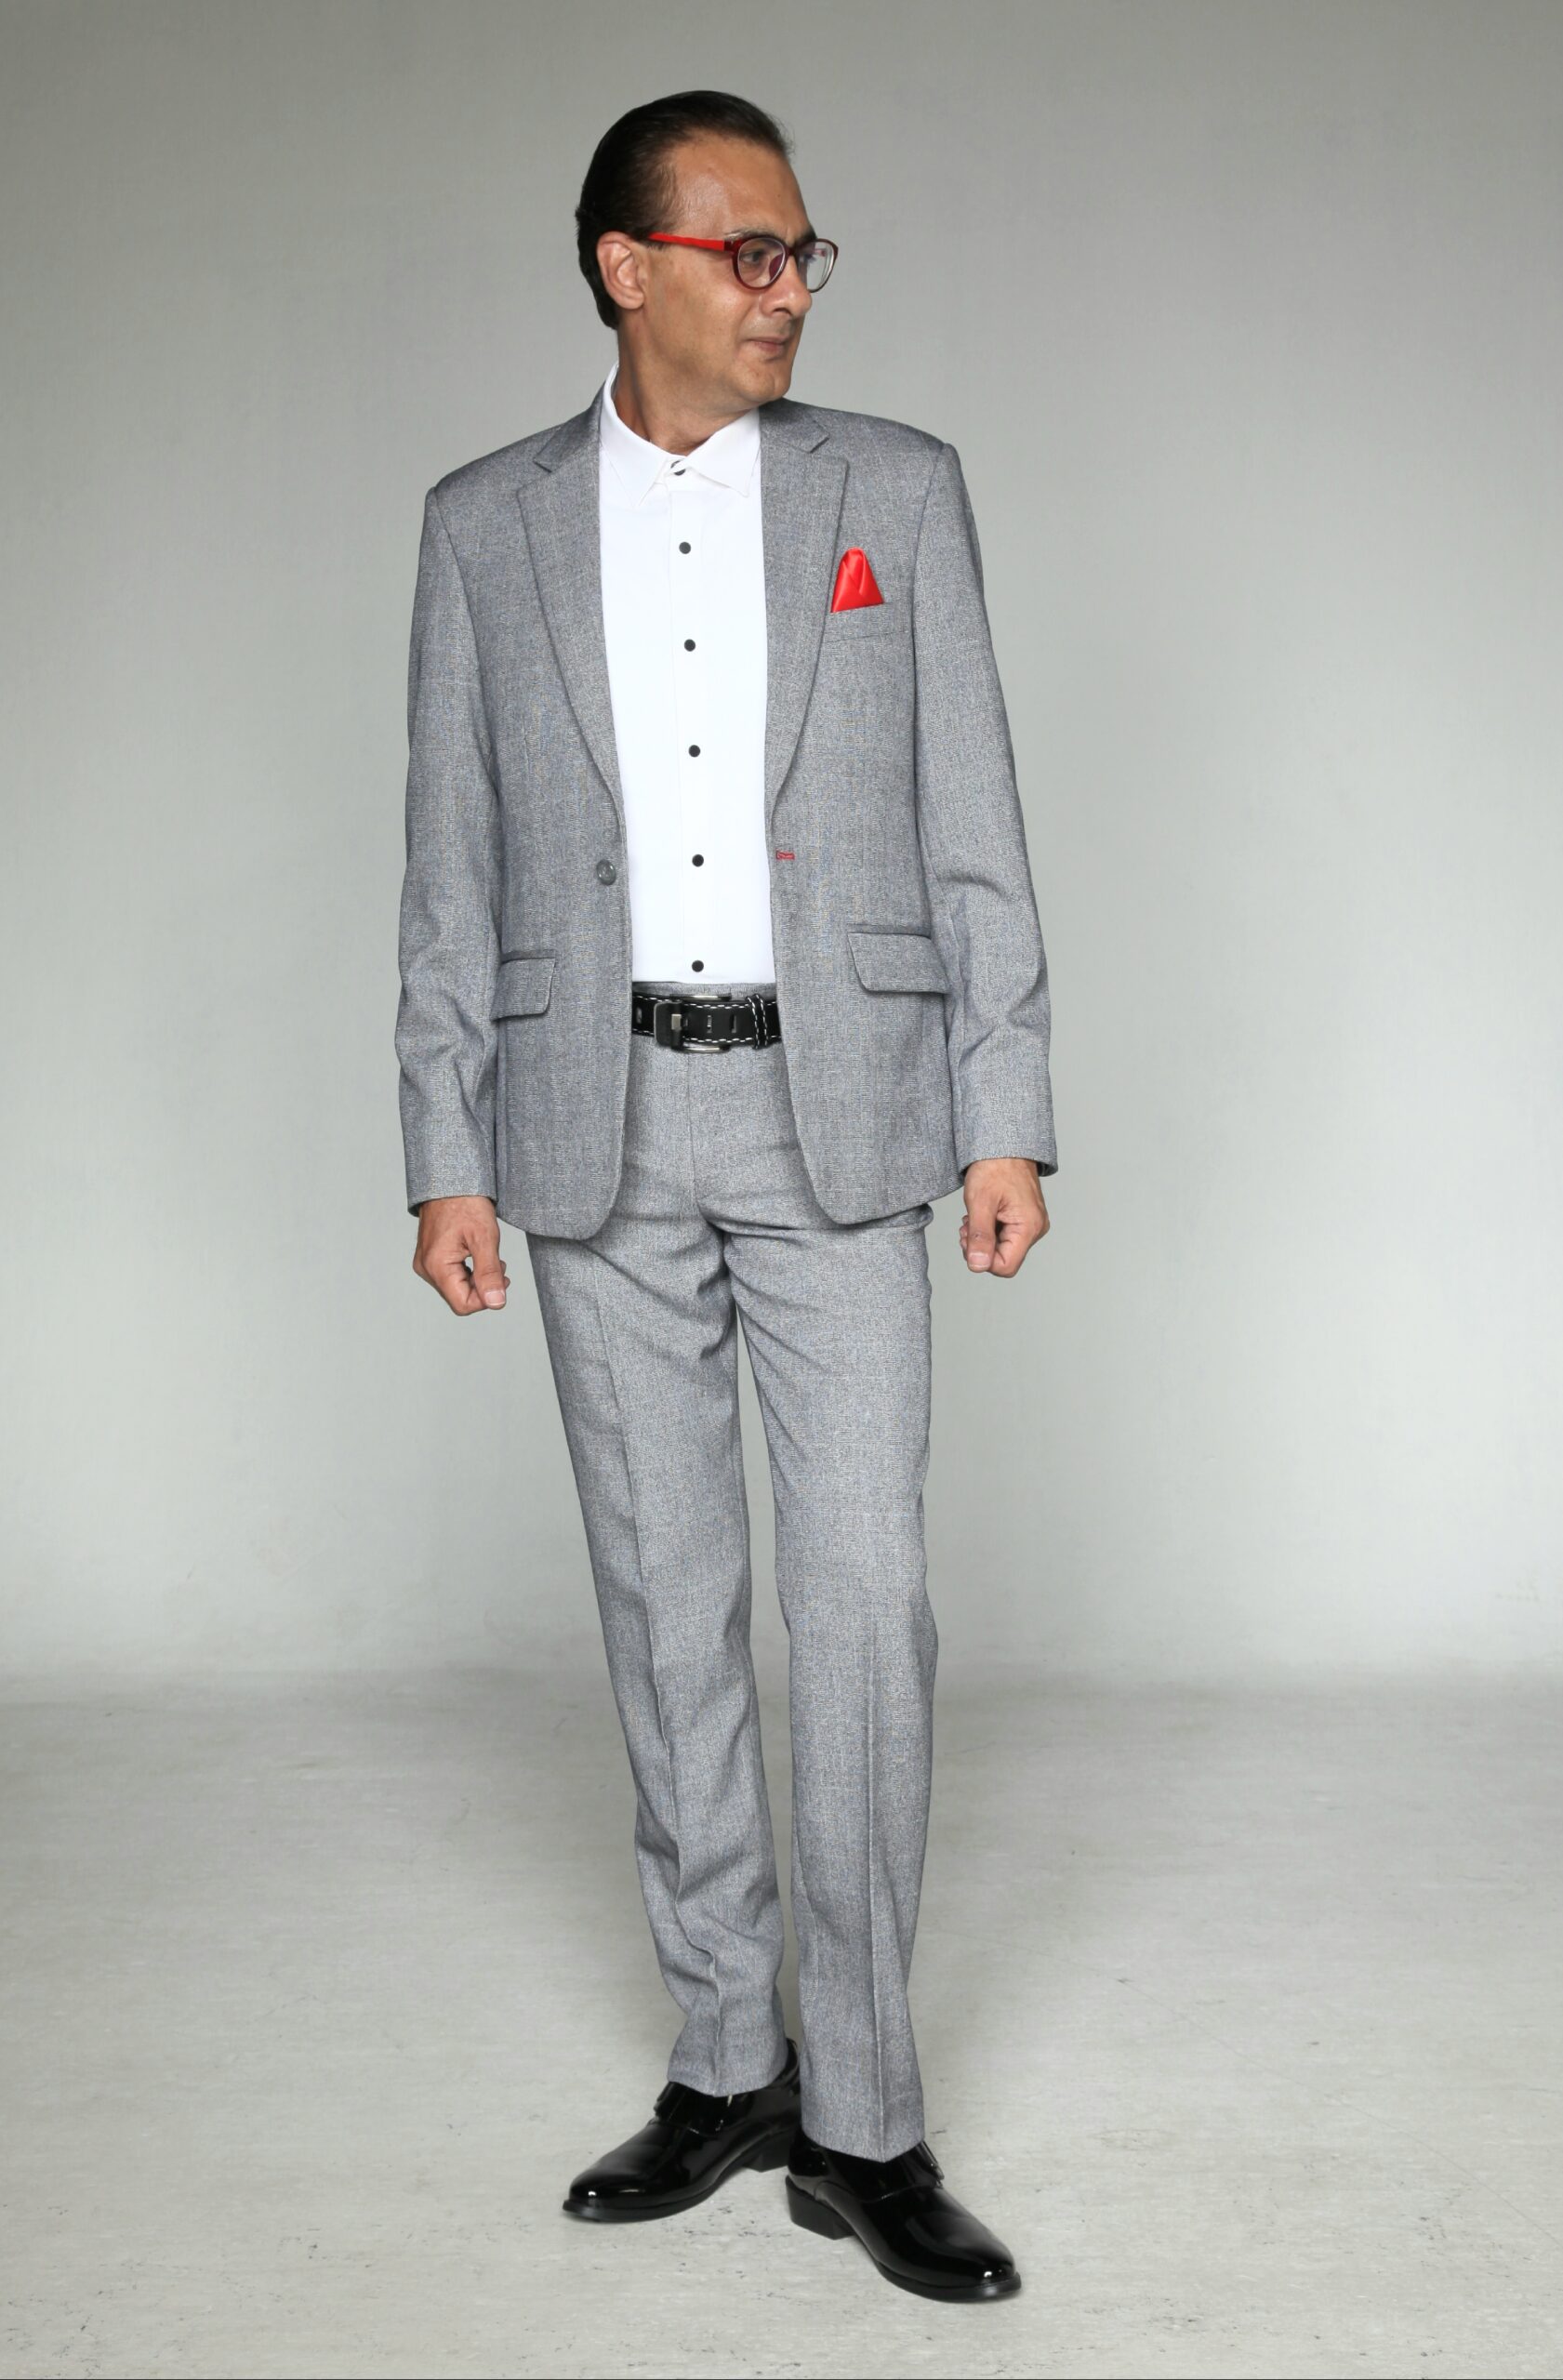 MST-5026-03-rent_rental_hire_tuxedo_suit_black_tie_suit_designer_suits_shop_tailor_tailors_singapore_wedding